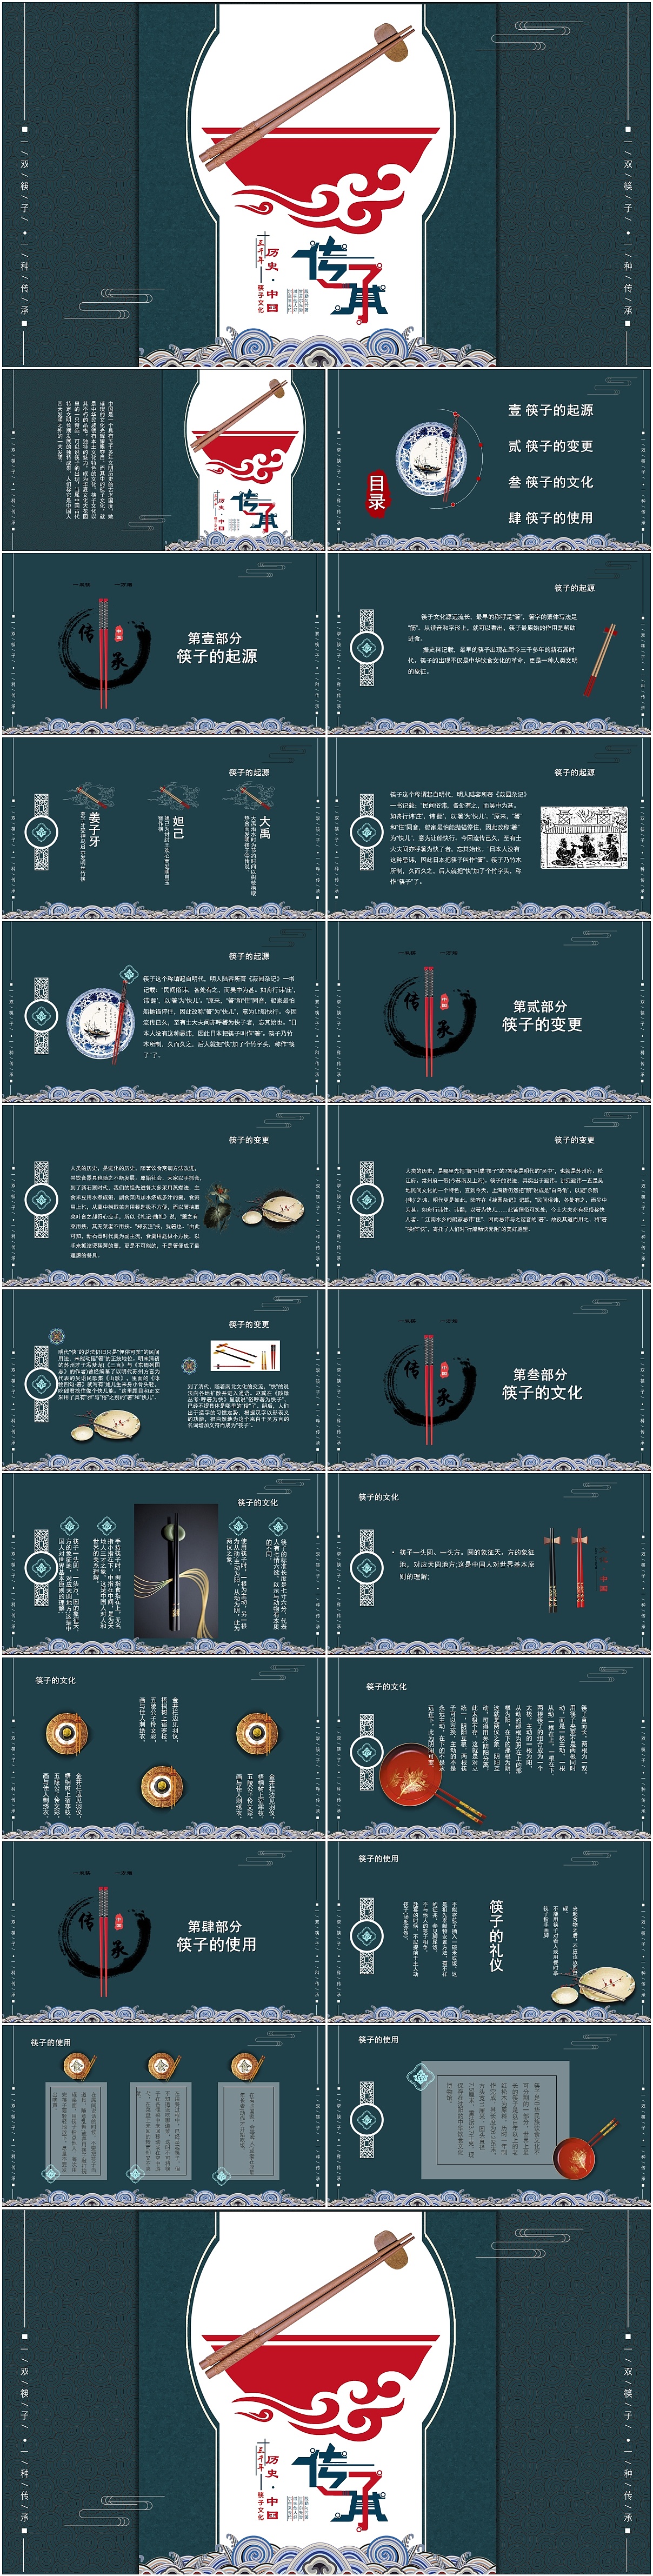 复古中国风传承历史文化三千年之筷子文化介绍ppt模板